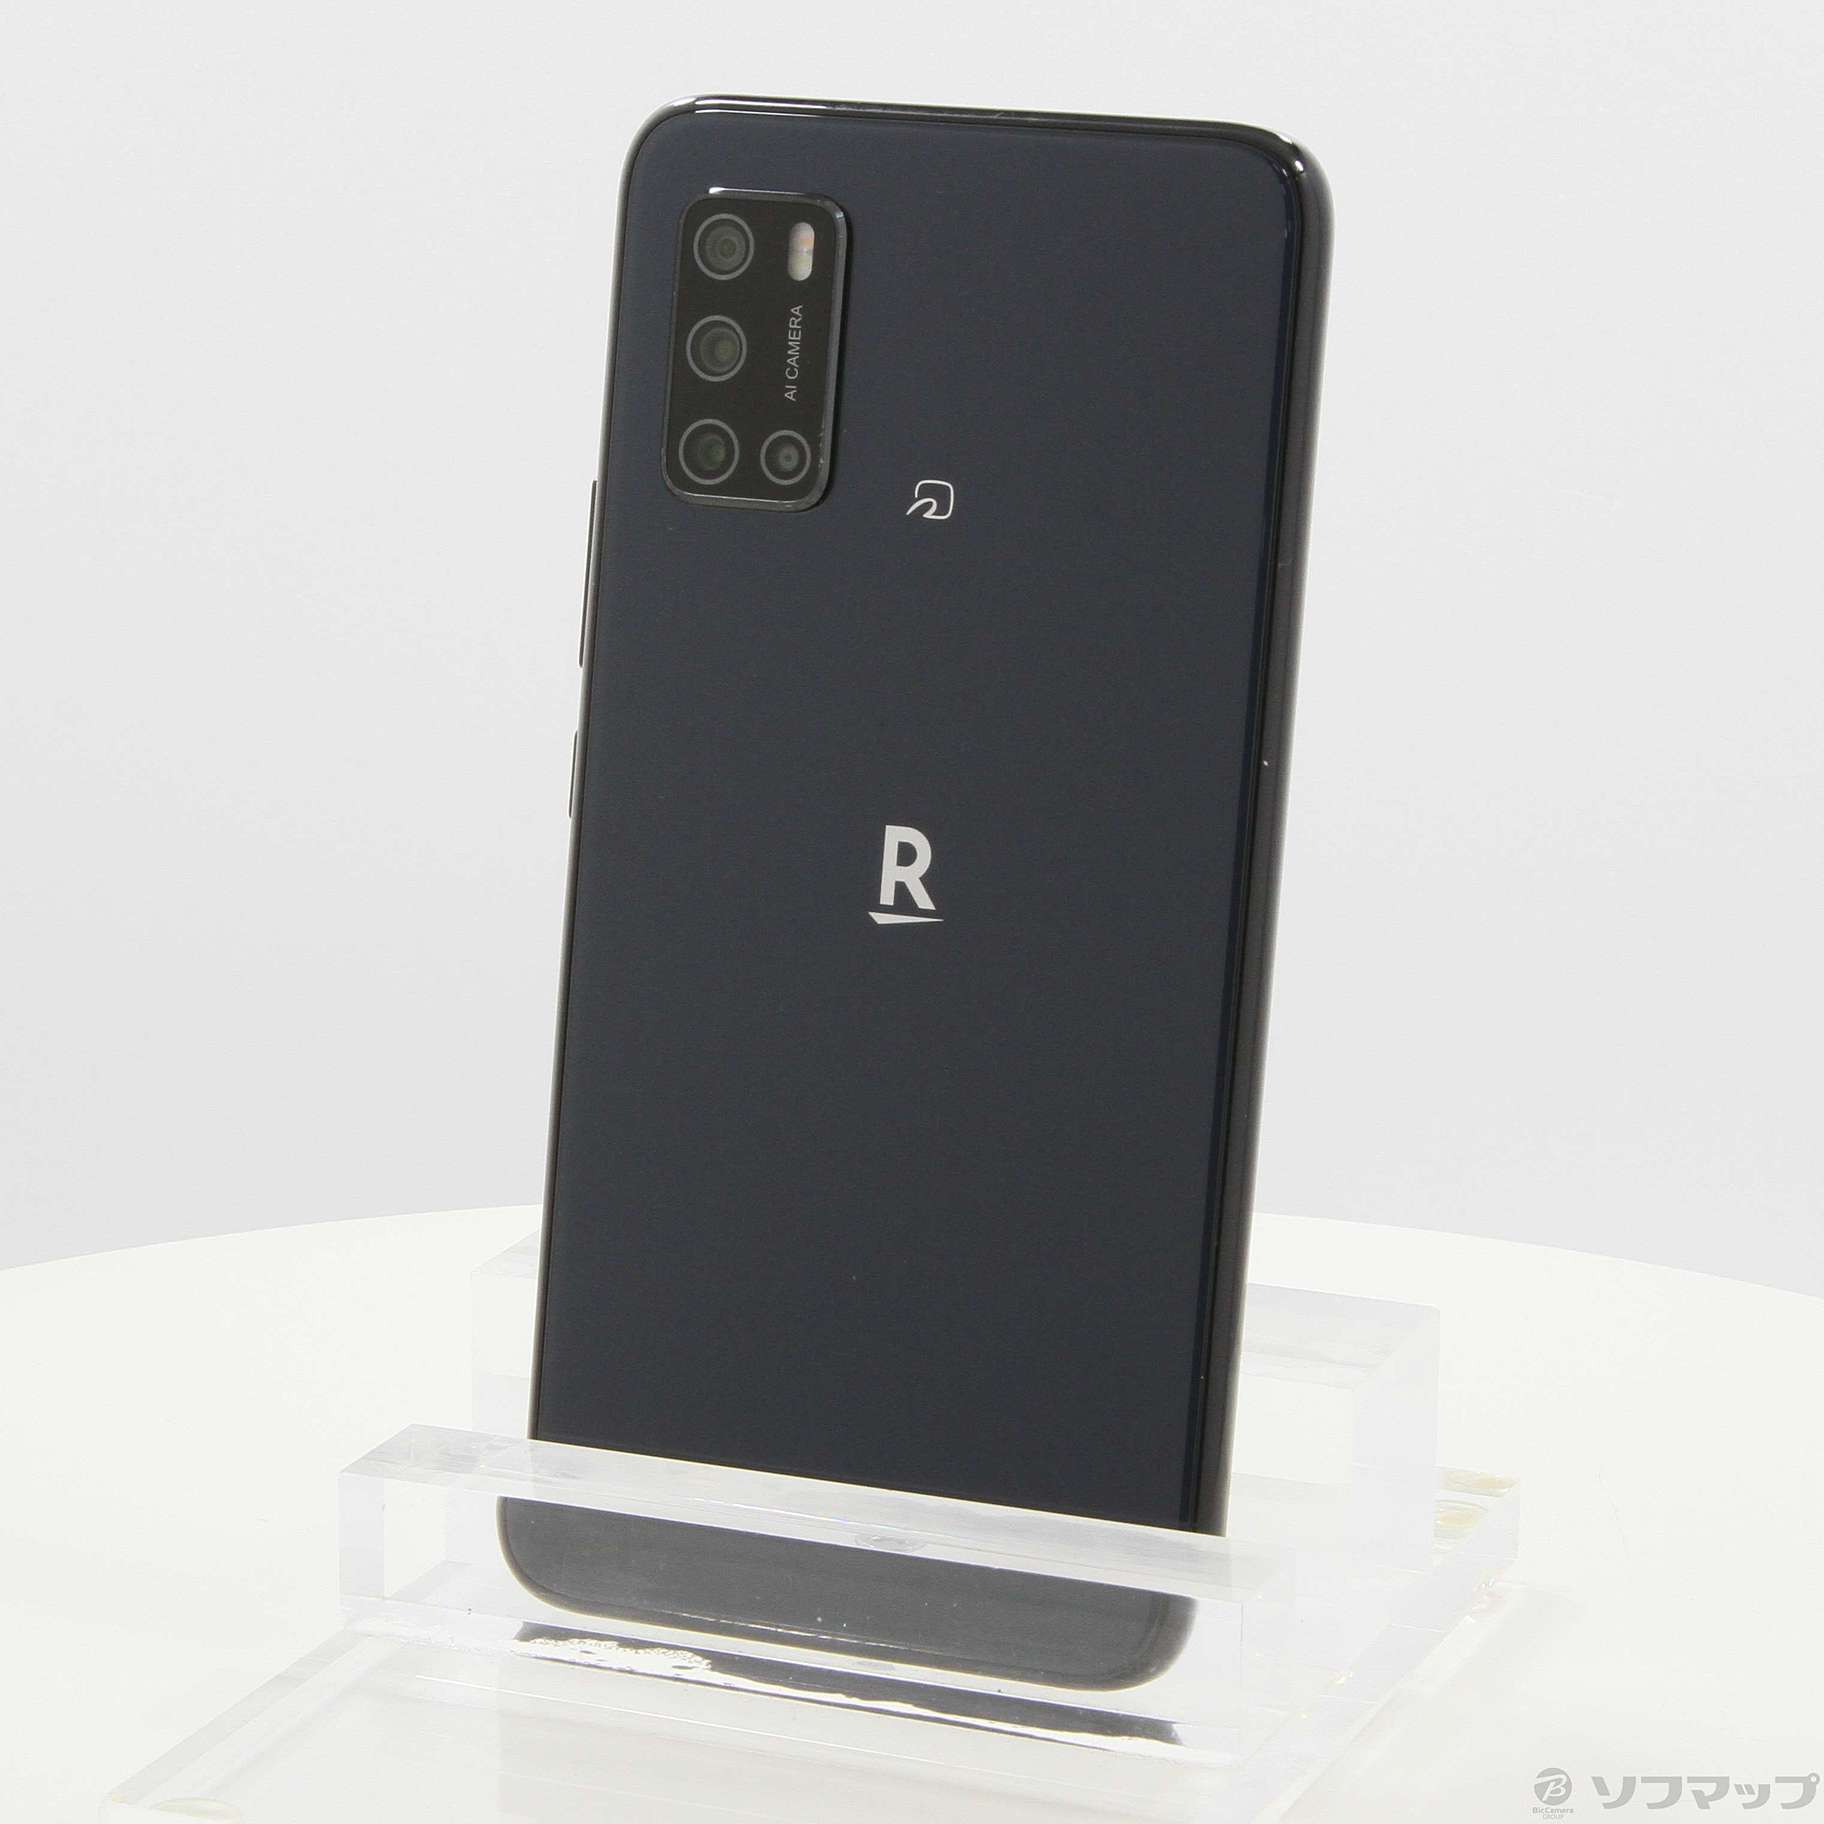 Rakuten BIG S ブラック 128GB SIMフリー - スマートフォン本体